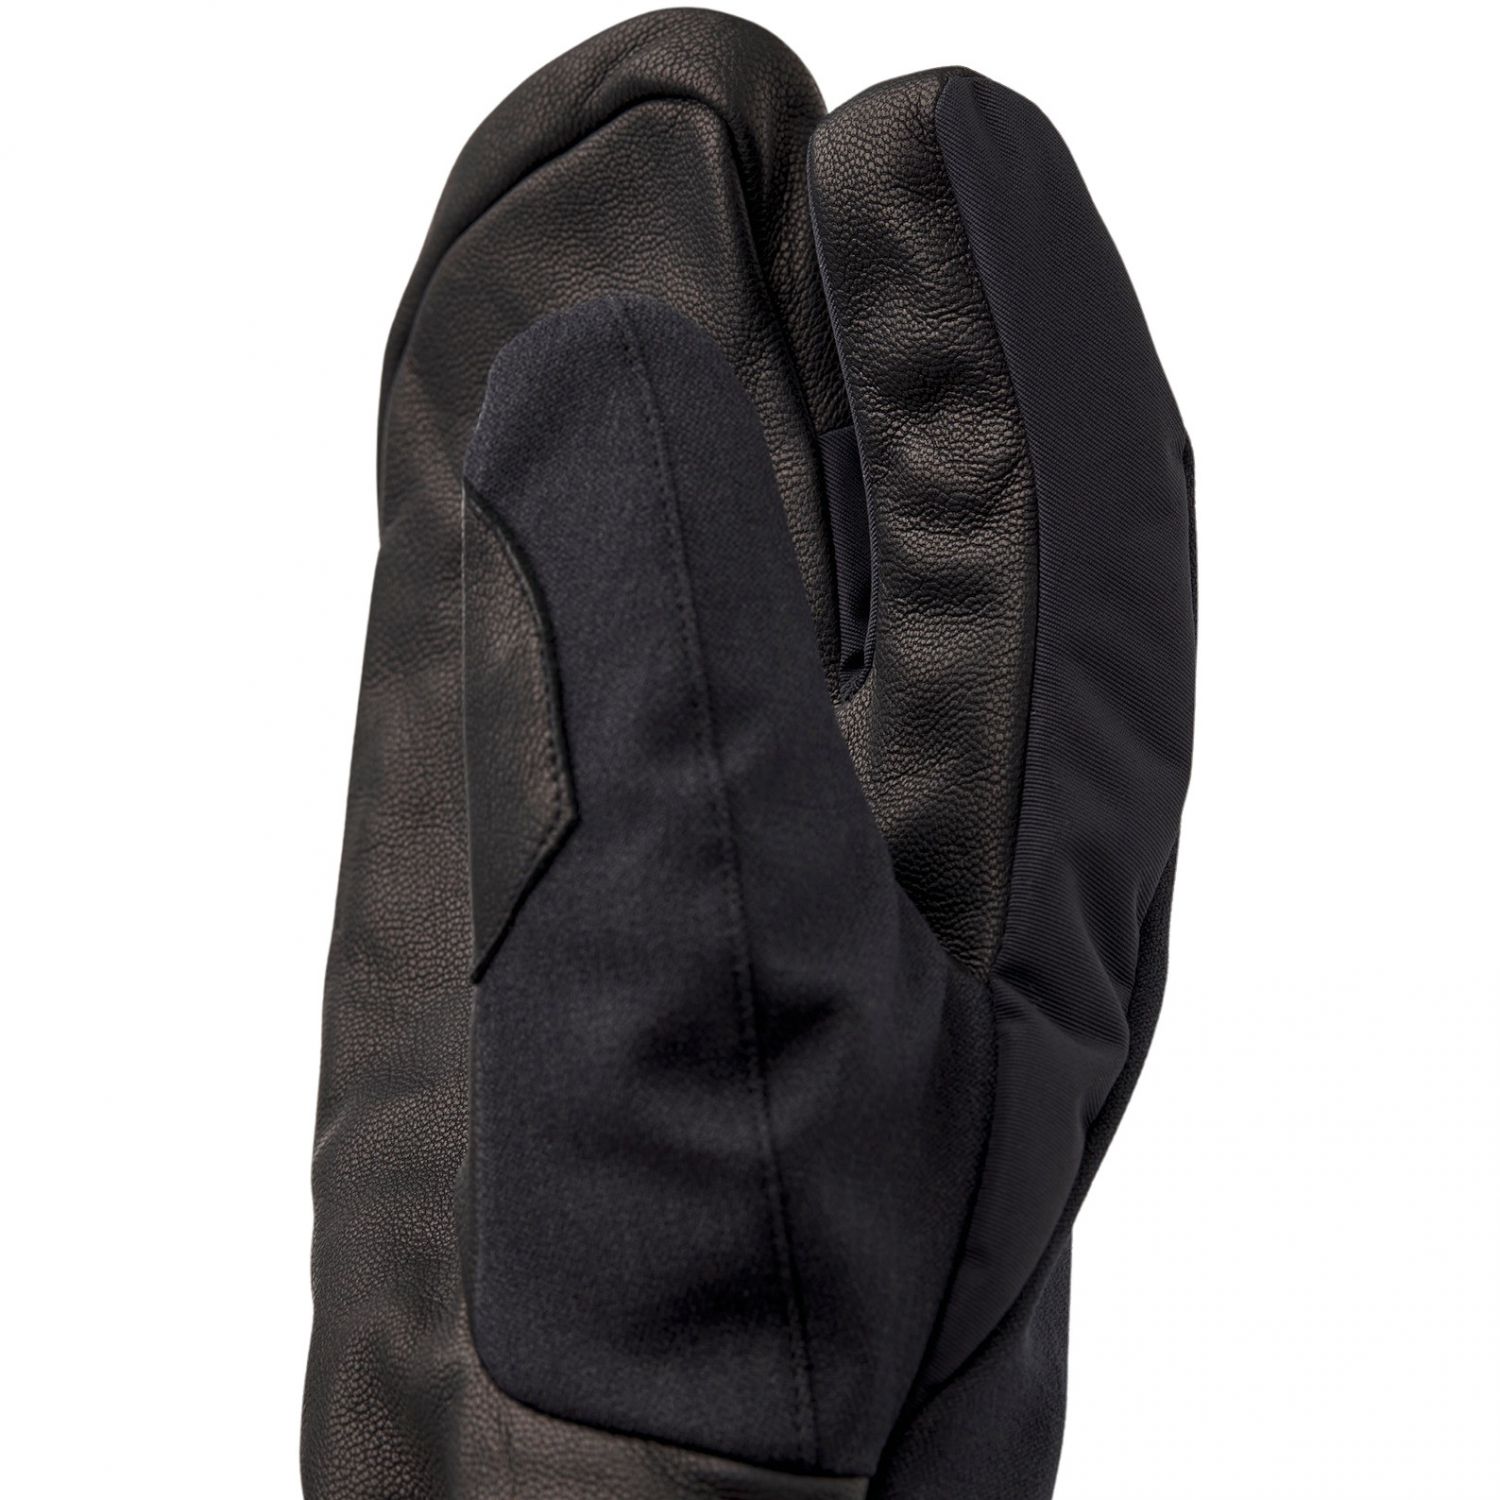 Hestra Powder Gauntlet, 3-finger ski gloves, black